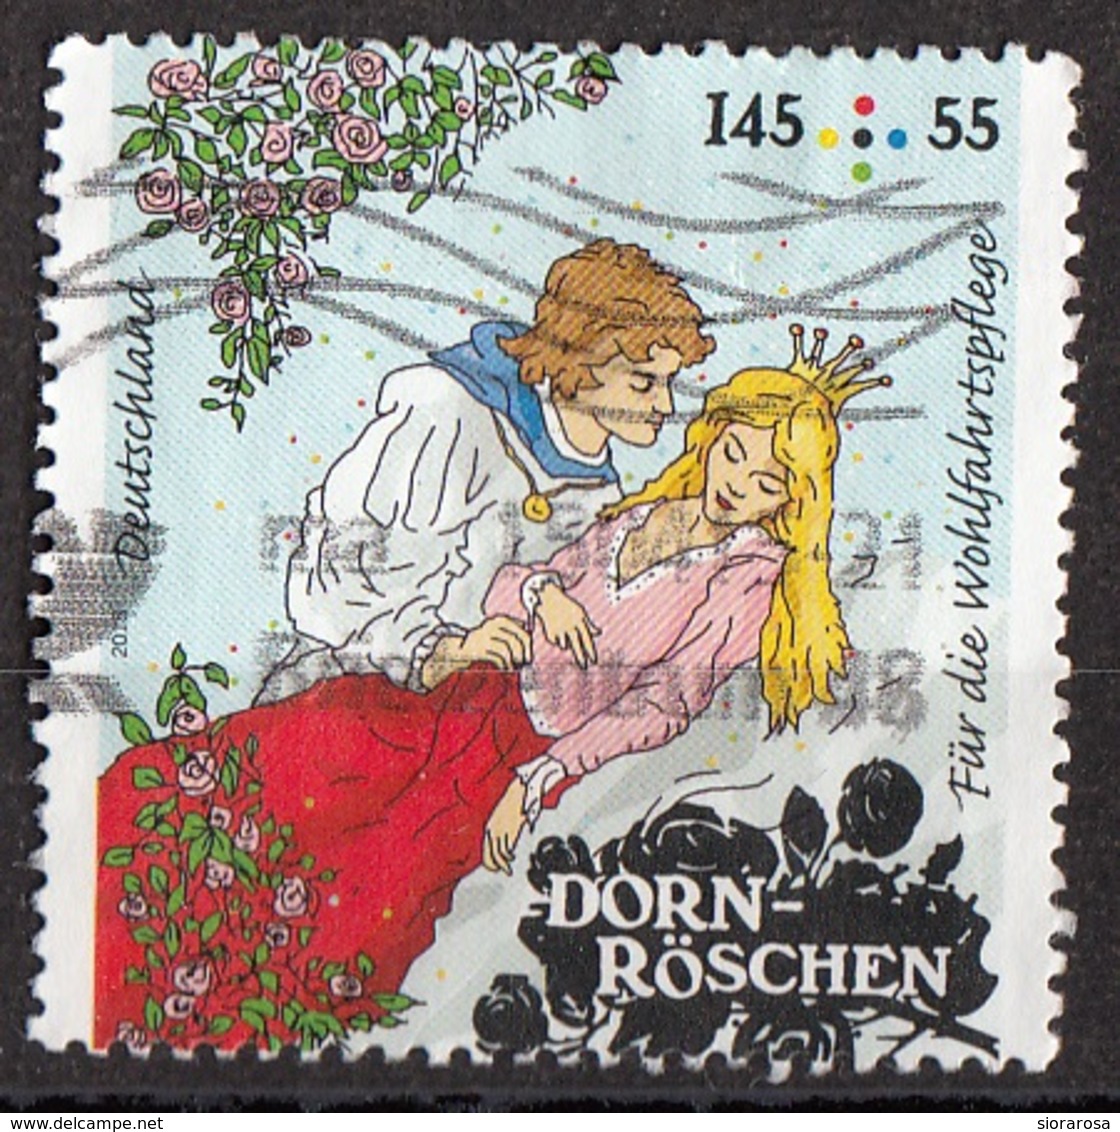 Germania 2015 Mi. 3134 Favole : DORN-ROSCHEN - Bella Addormentata Grimm Used Deutschland Germany - Verhalen, Fabels En Legenden